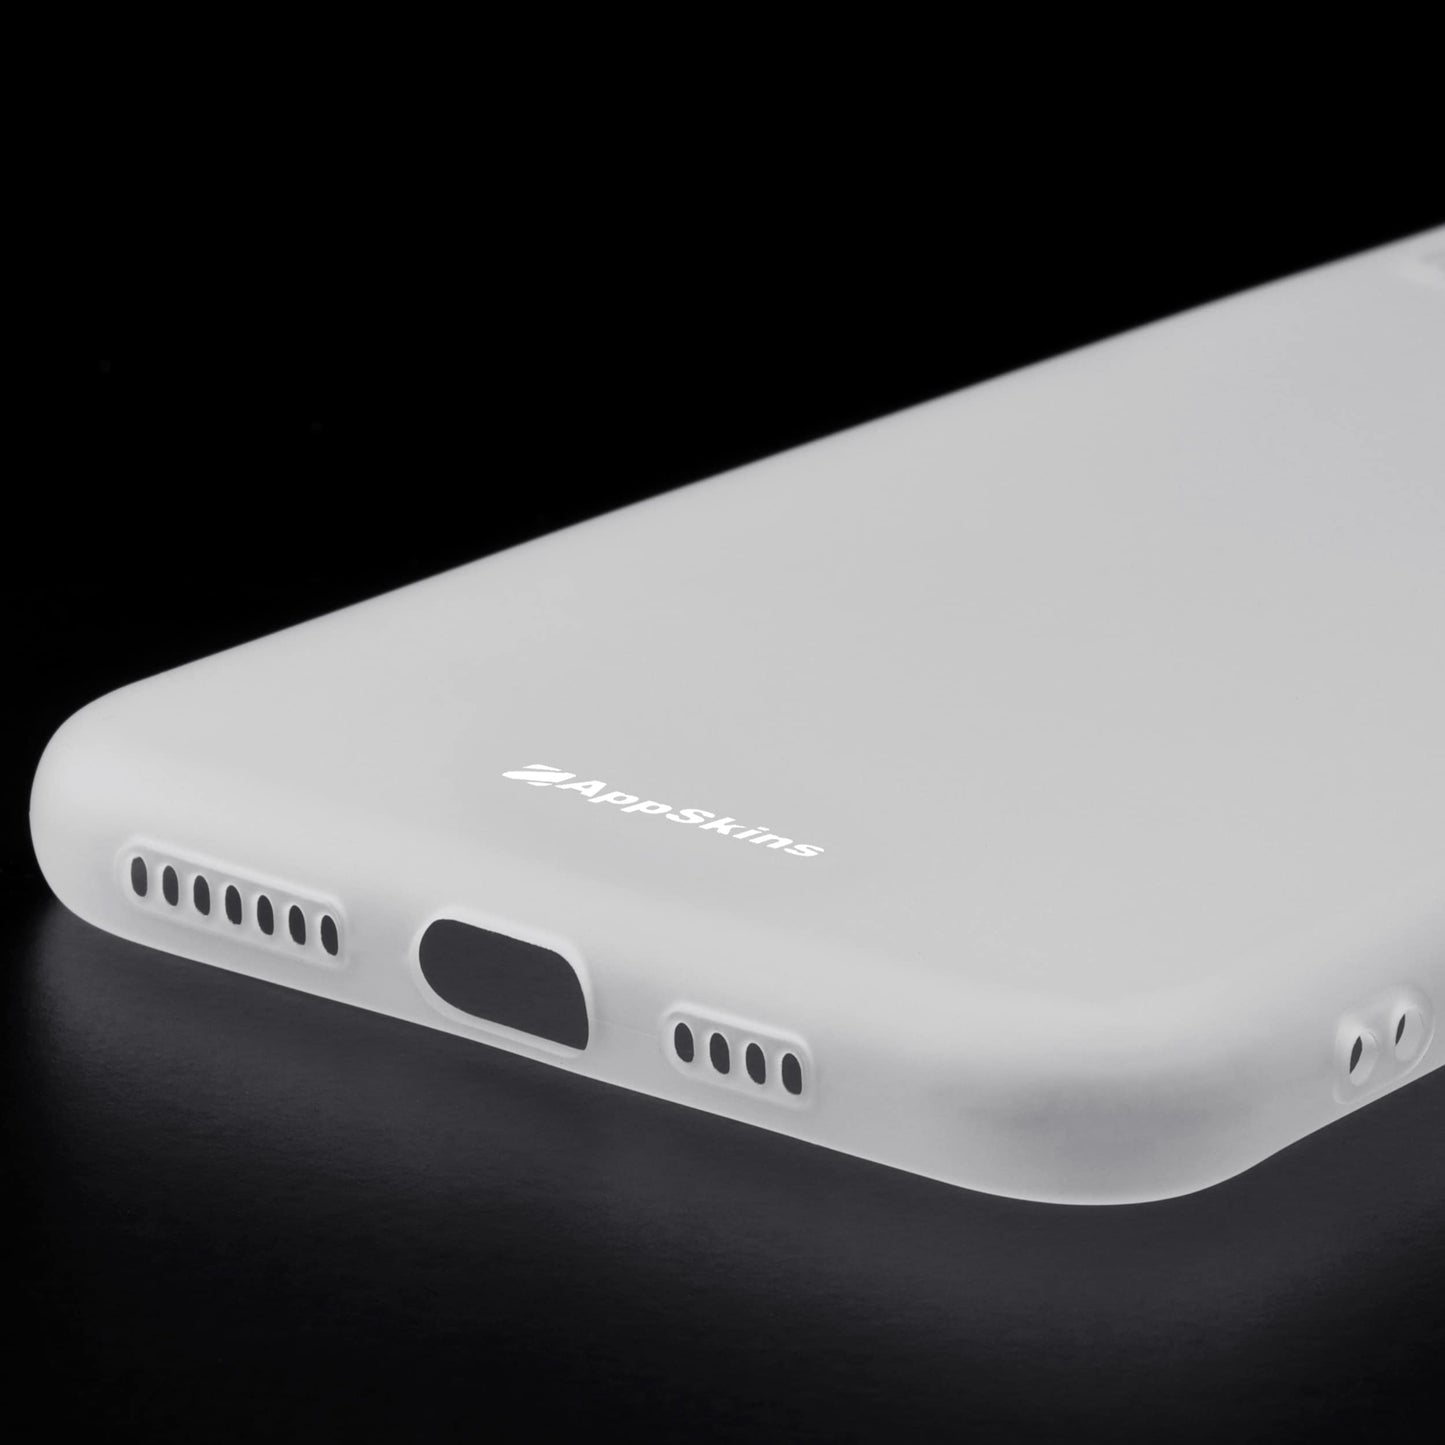 iPhone XS Max - Slim-Case